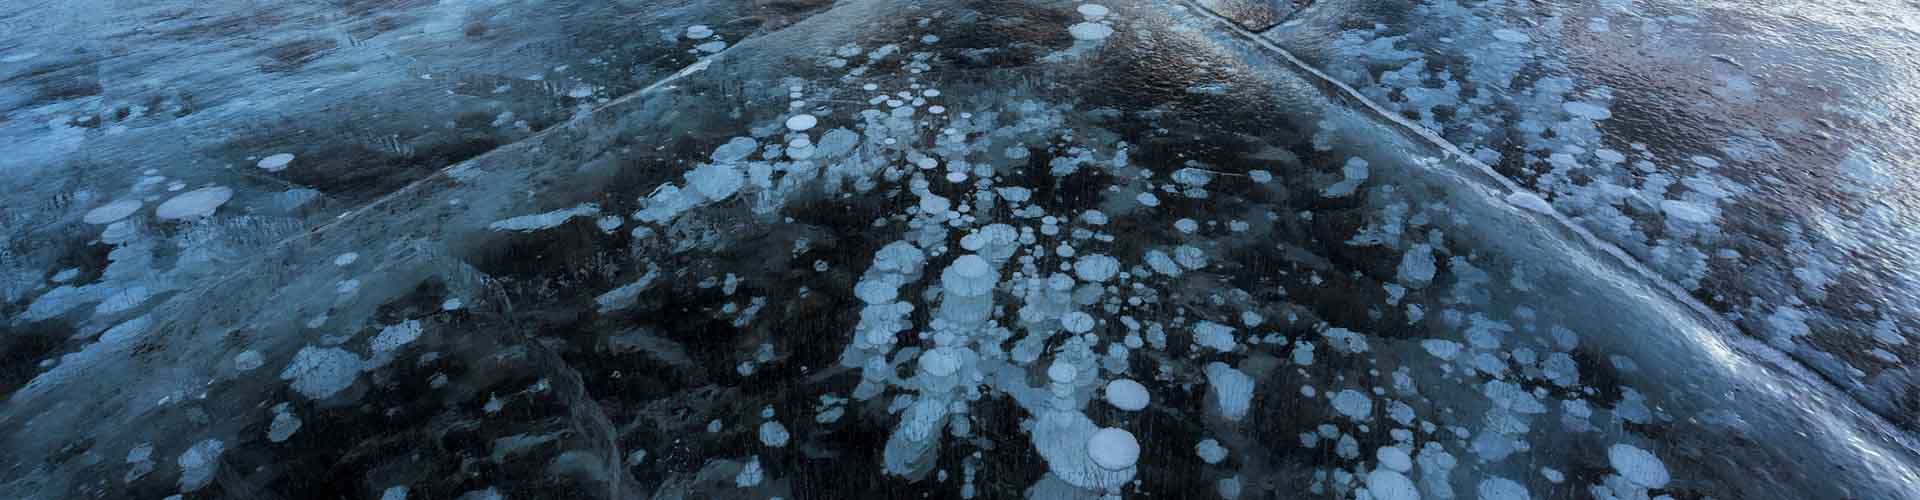 Bubbles beneath a frozen lake surface.